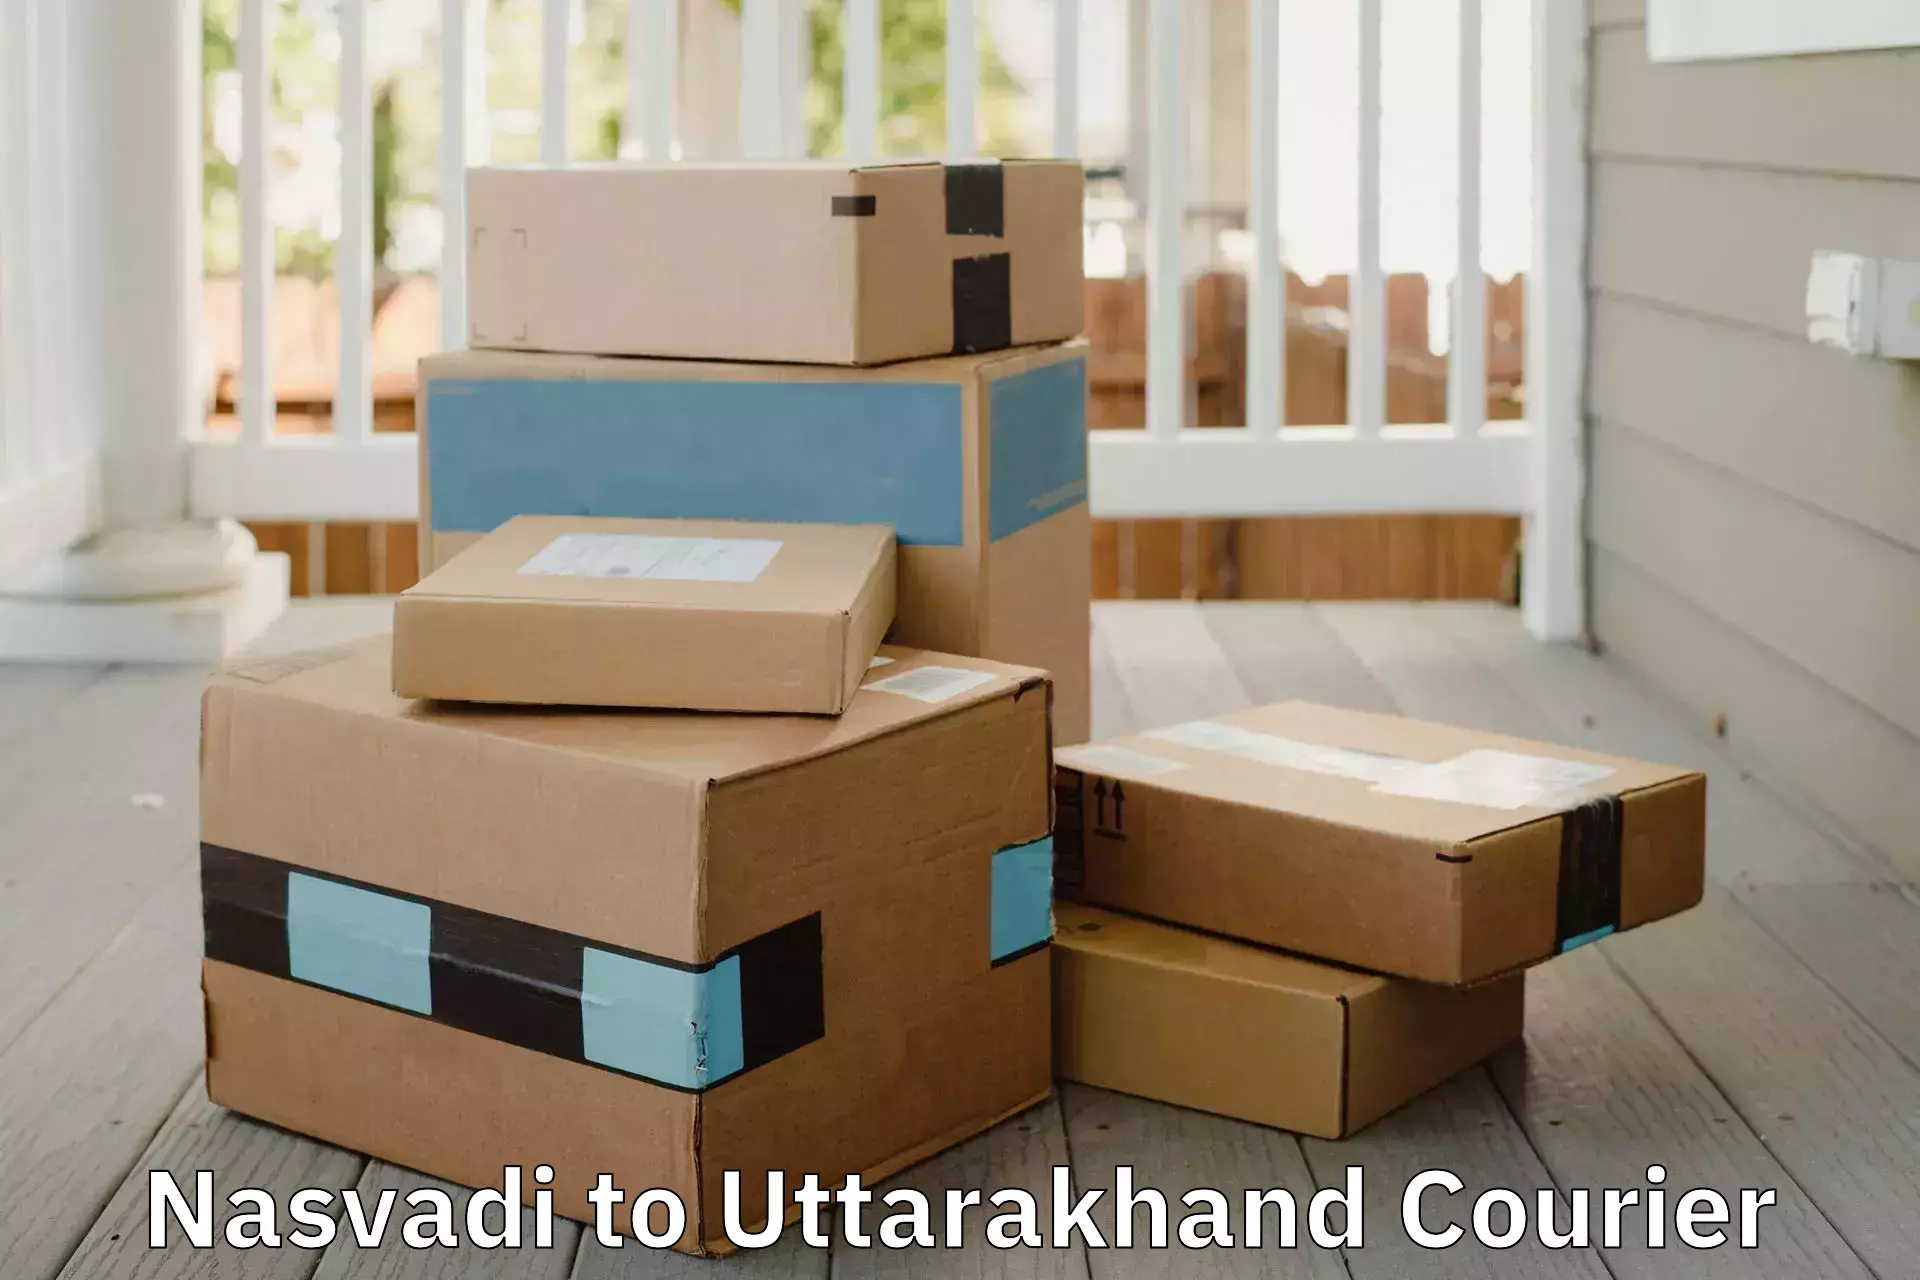 Professional moving company Nasvadi to Kotdwara